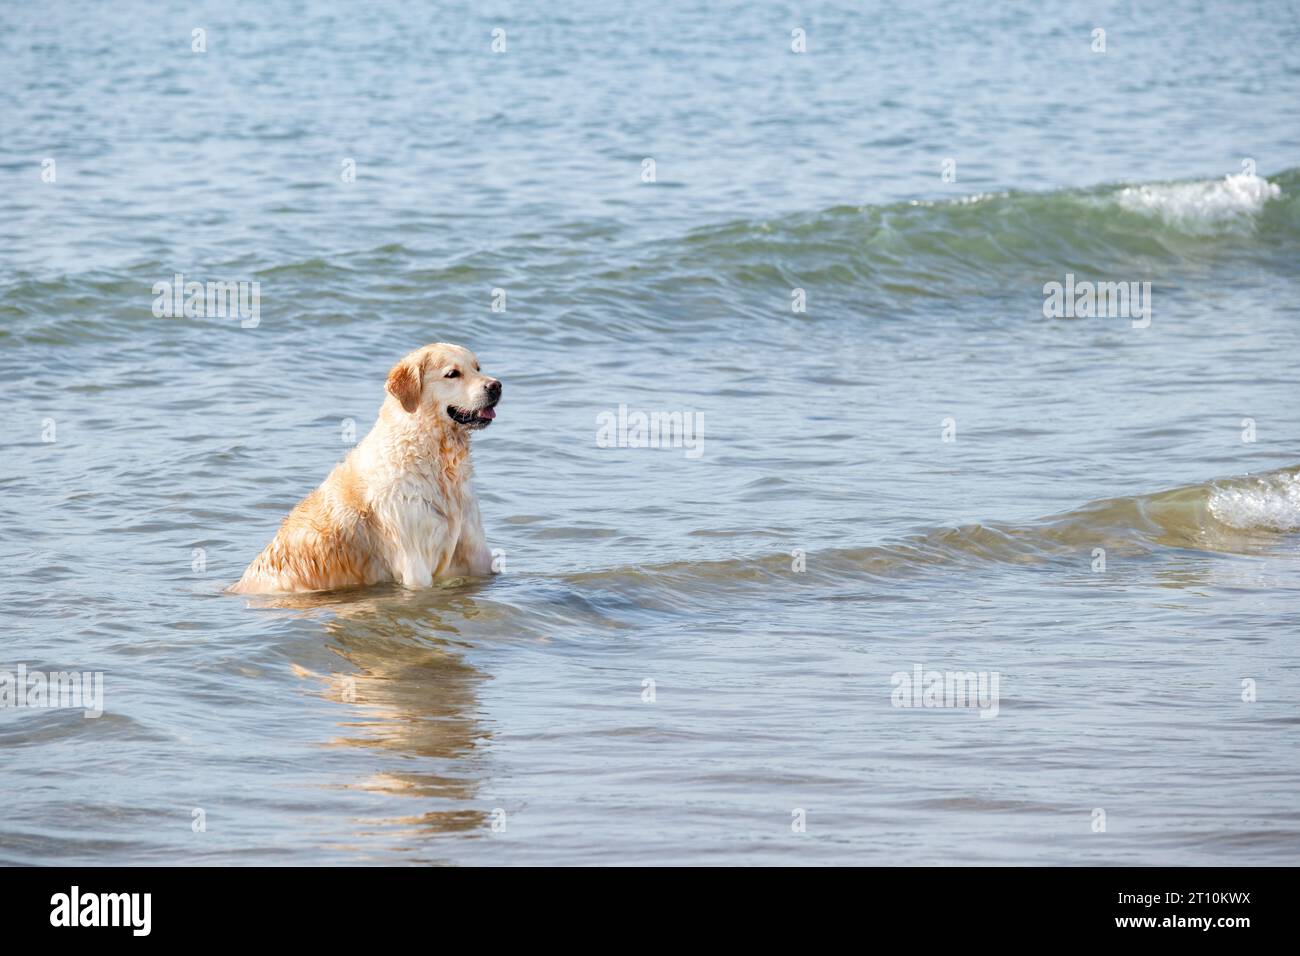 Un grand chien adulte Golden Retriever assis dans l'eau de mer peu profonde tandis que les vagues passent près de lui. Le chien est mouillé et détendu en regardant vers la ligne de rivage Banque D'Images